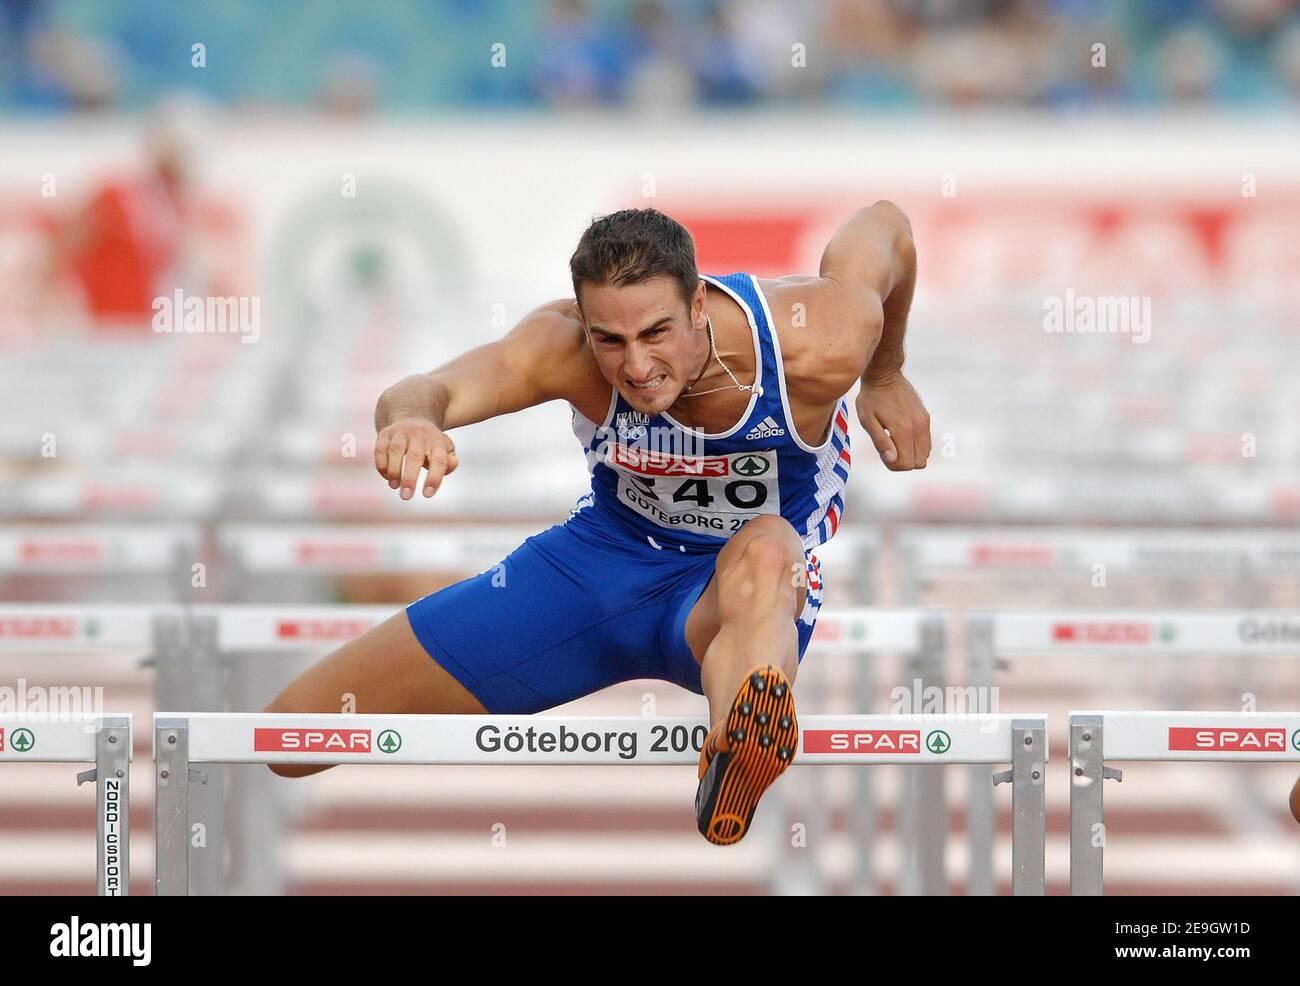 Romain Barras, de Francia, compite en vallas de 100 metros de decathlon  durante los Campeonatos europeos de atletismo, en Goteborg, Suecia, el 11  de agosto de 2006. Foto de Guibbaud-Kempinaire/Cameleon/ABACAPRESS.COM  Fotografía de